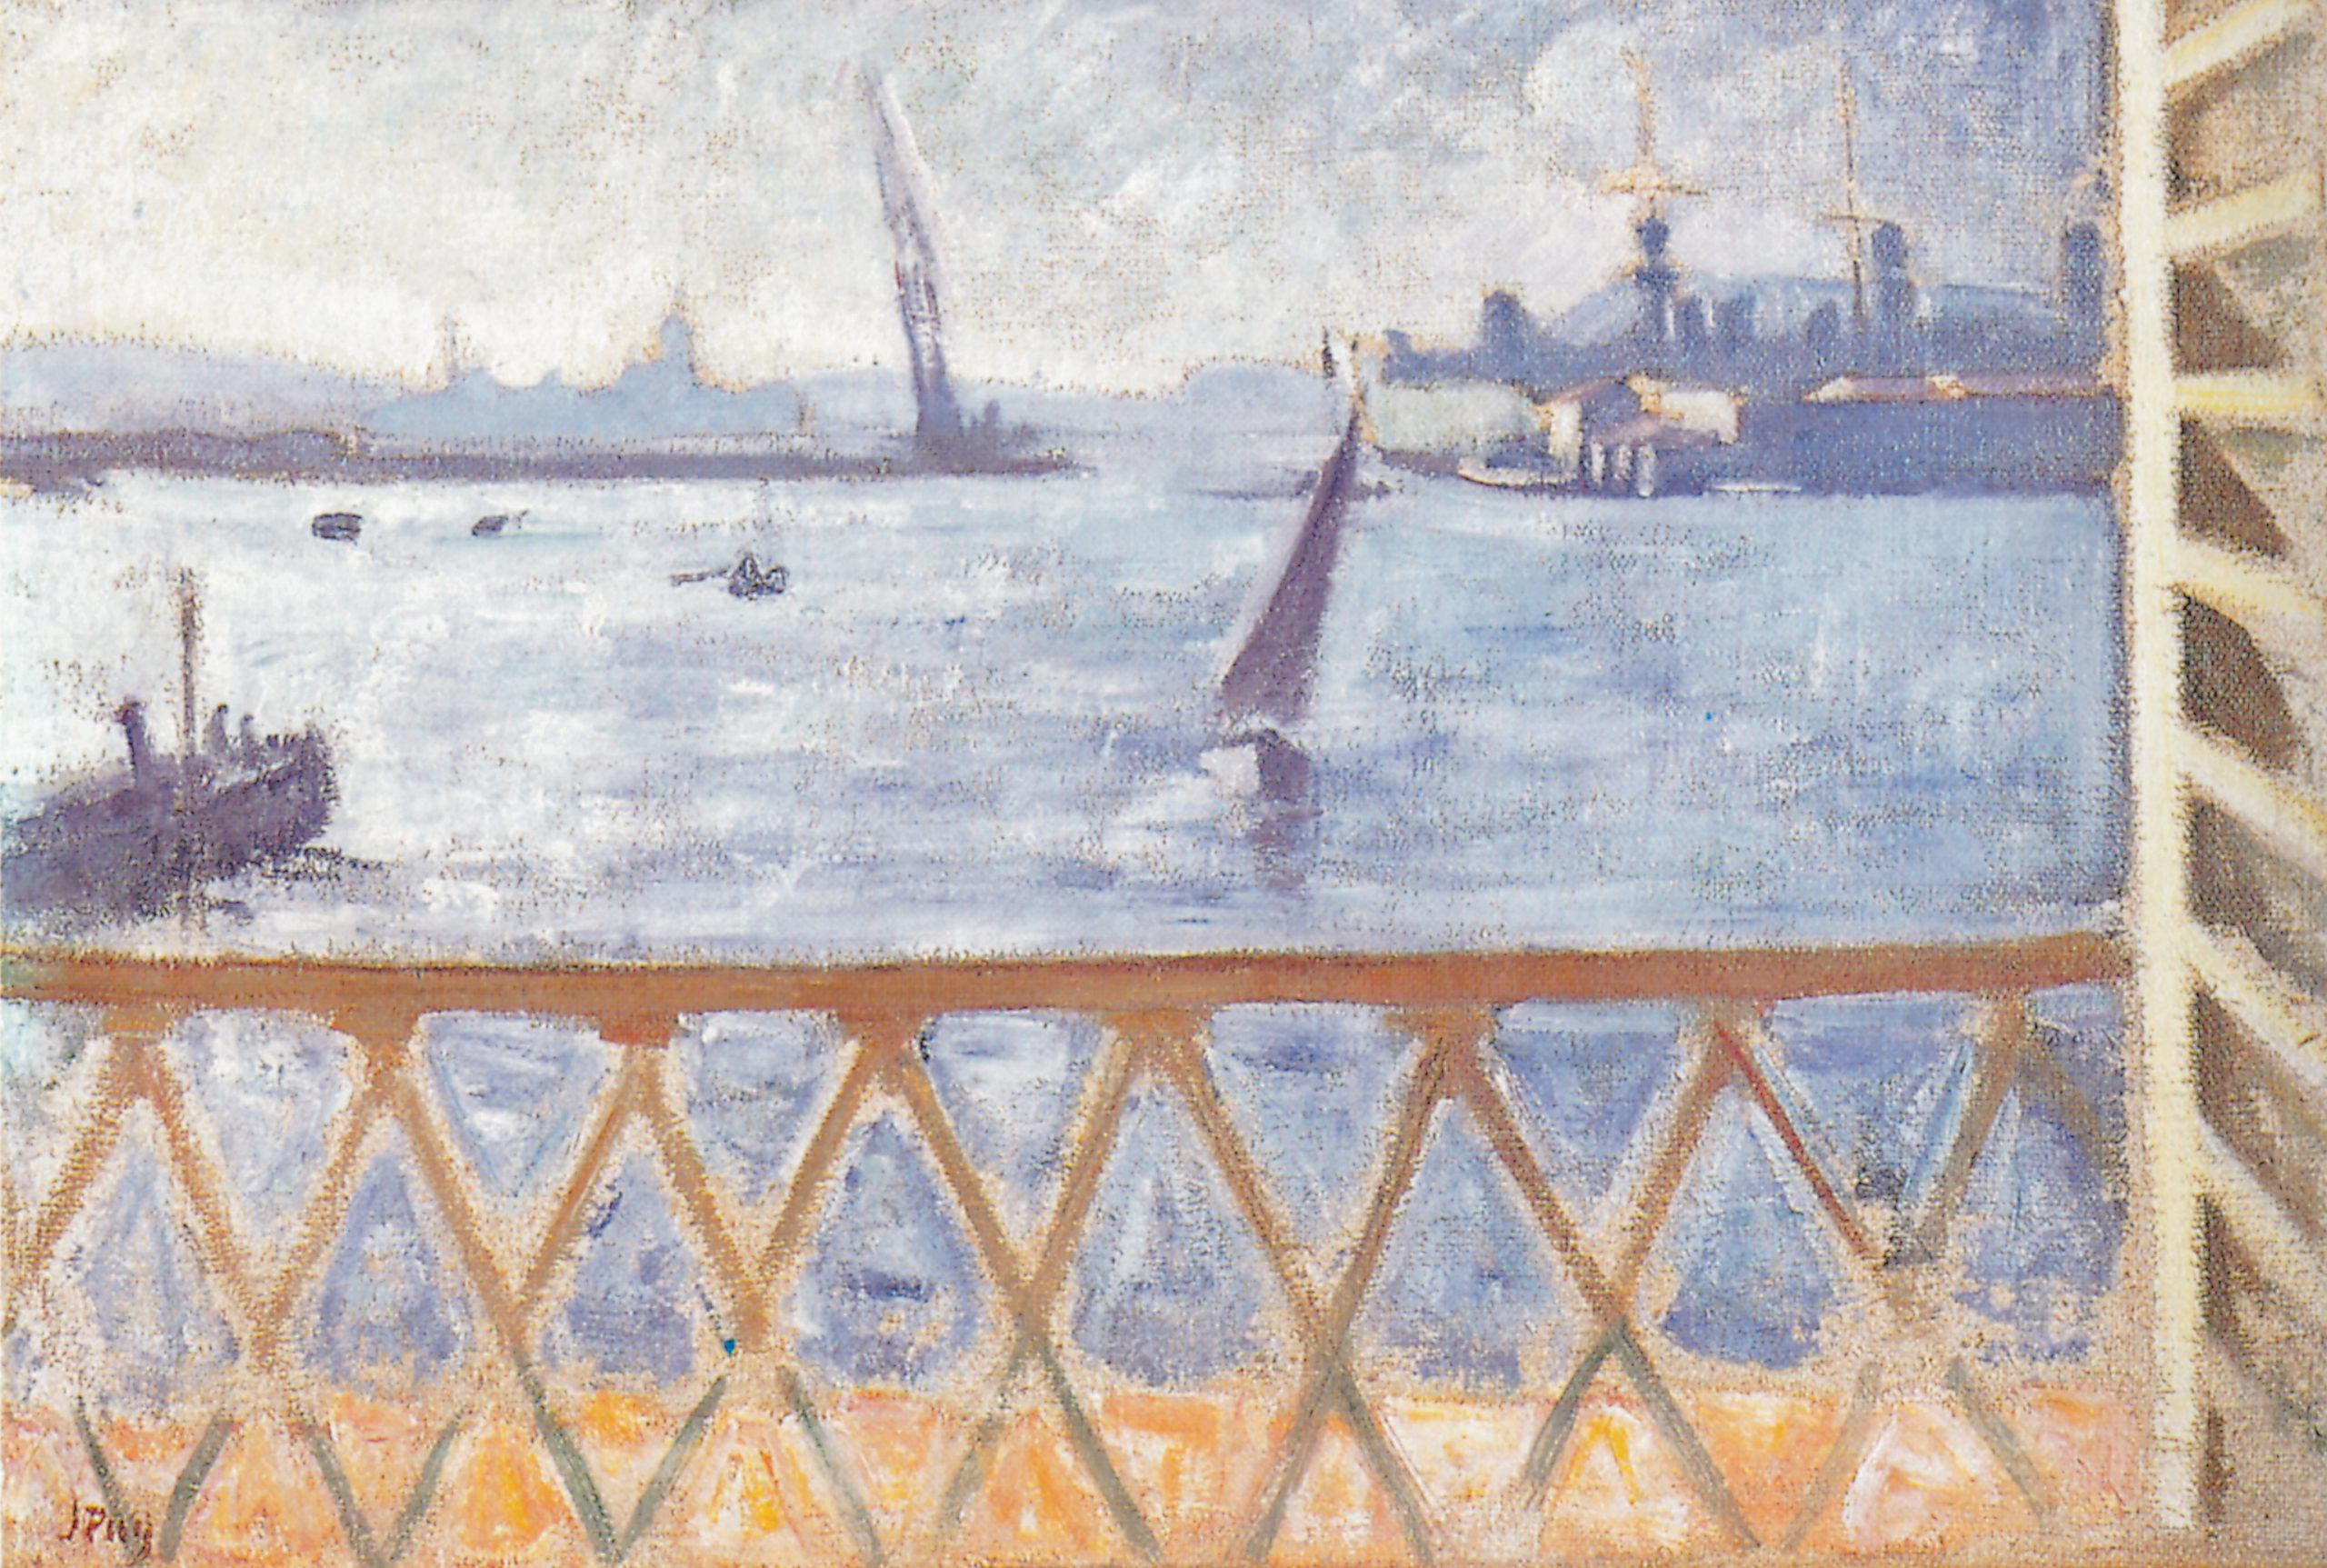 Le Port de Toulon, vu de la fenêtre, 1930, Huile sur toile, 50 x 73 cm, collection particulière